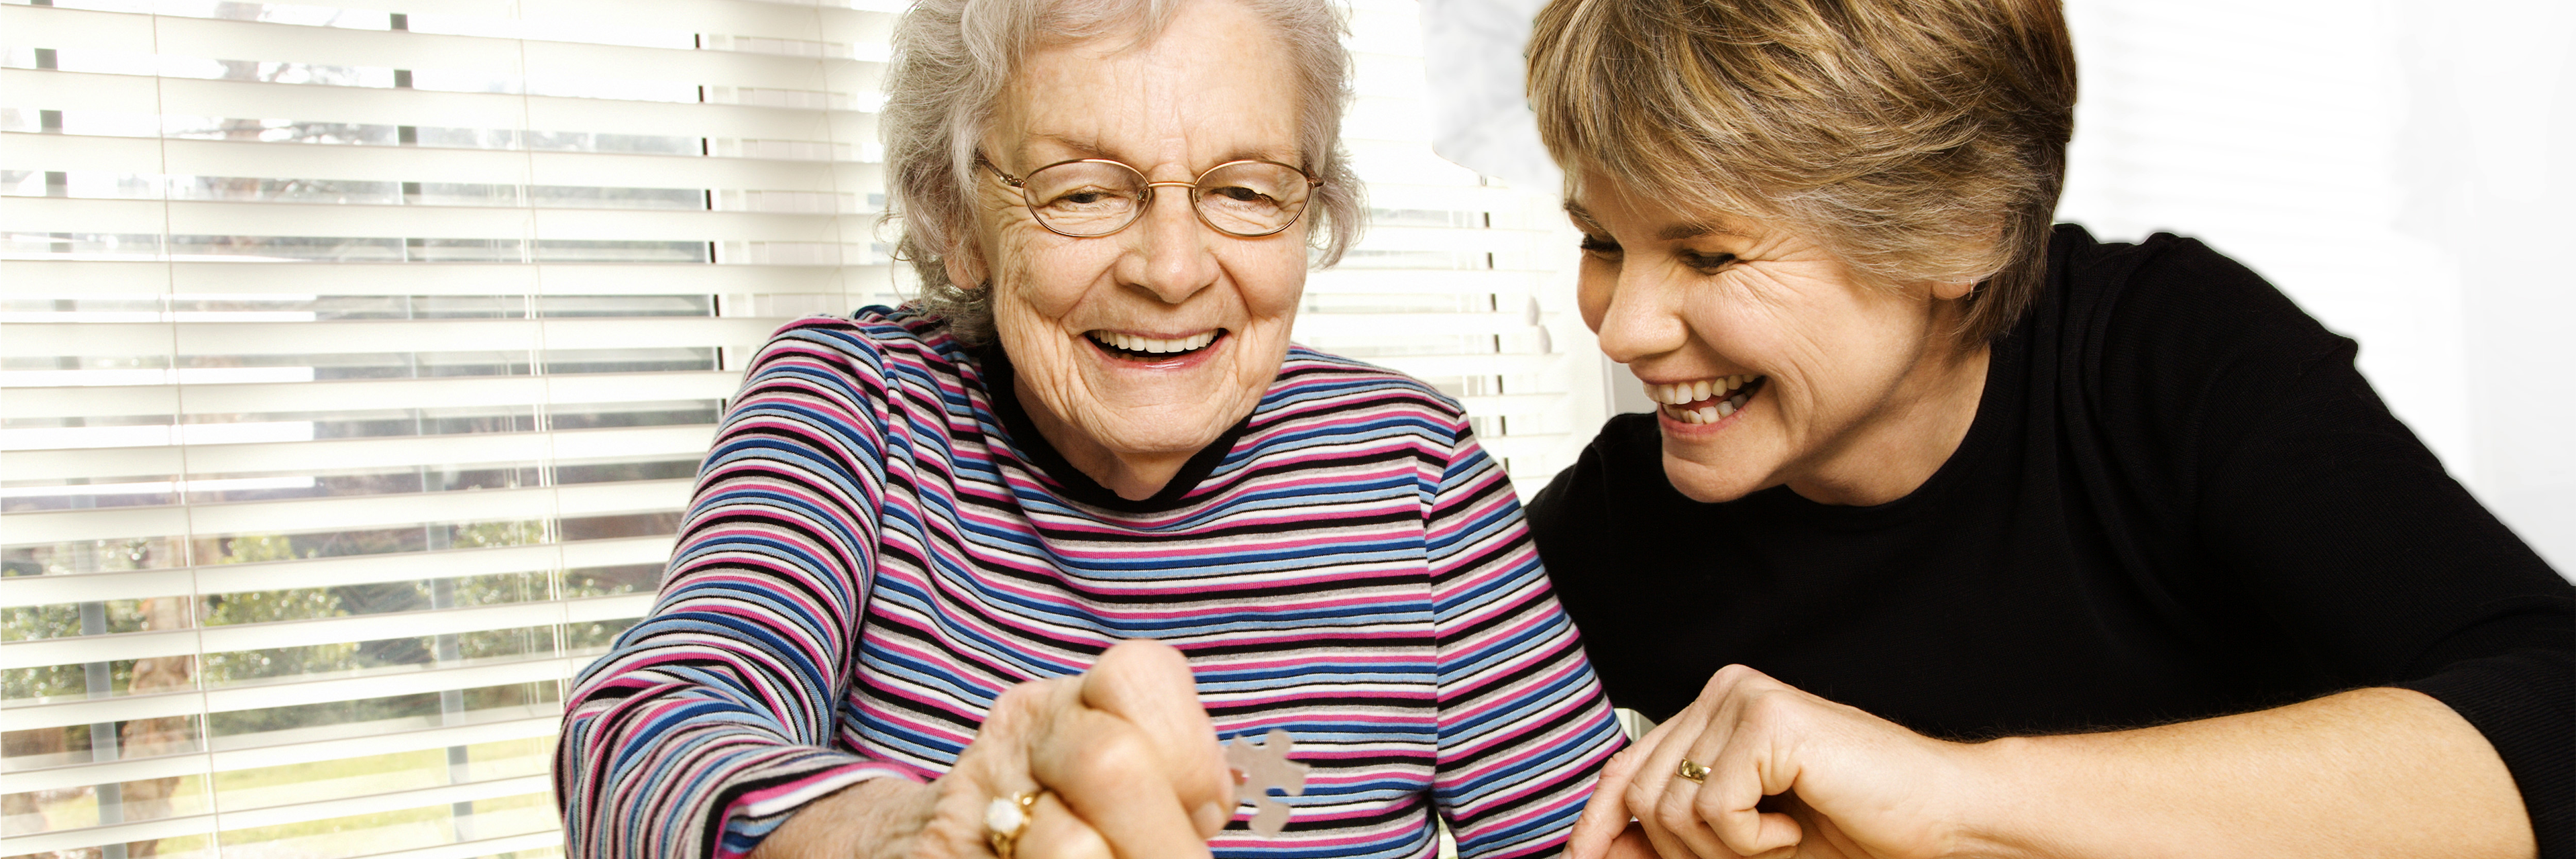 Memory Care - Alzheimer's and Dementia Care - Atria Senior Living